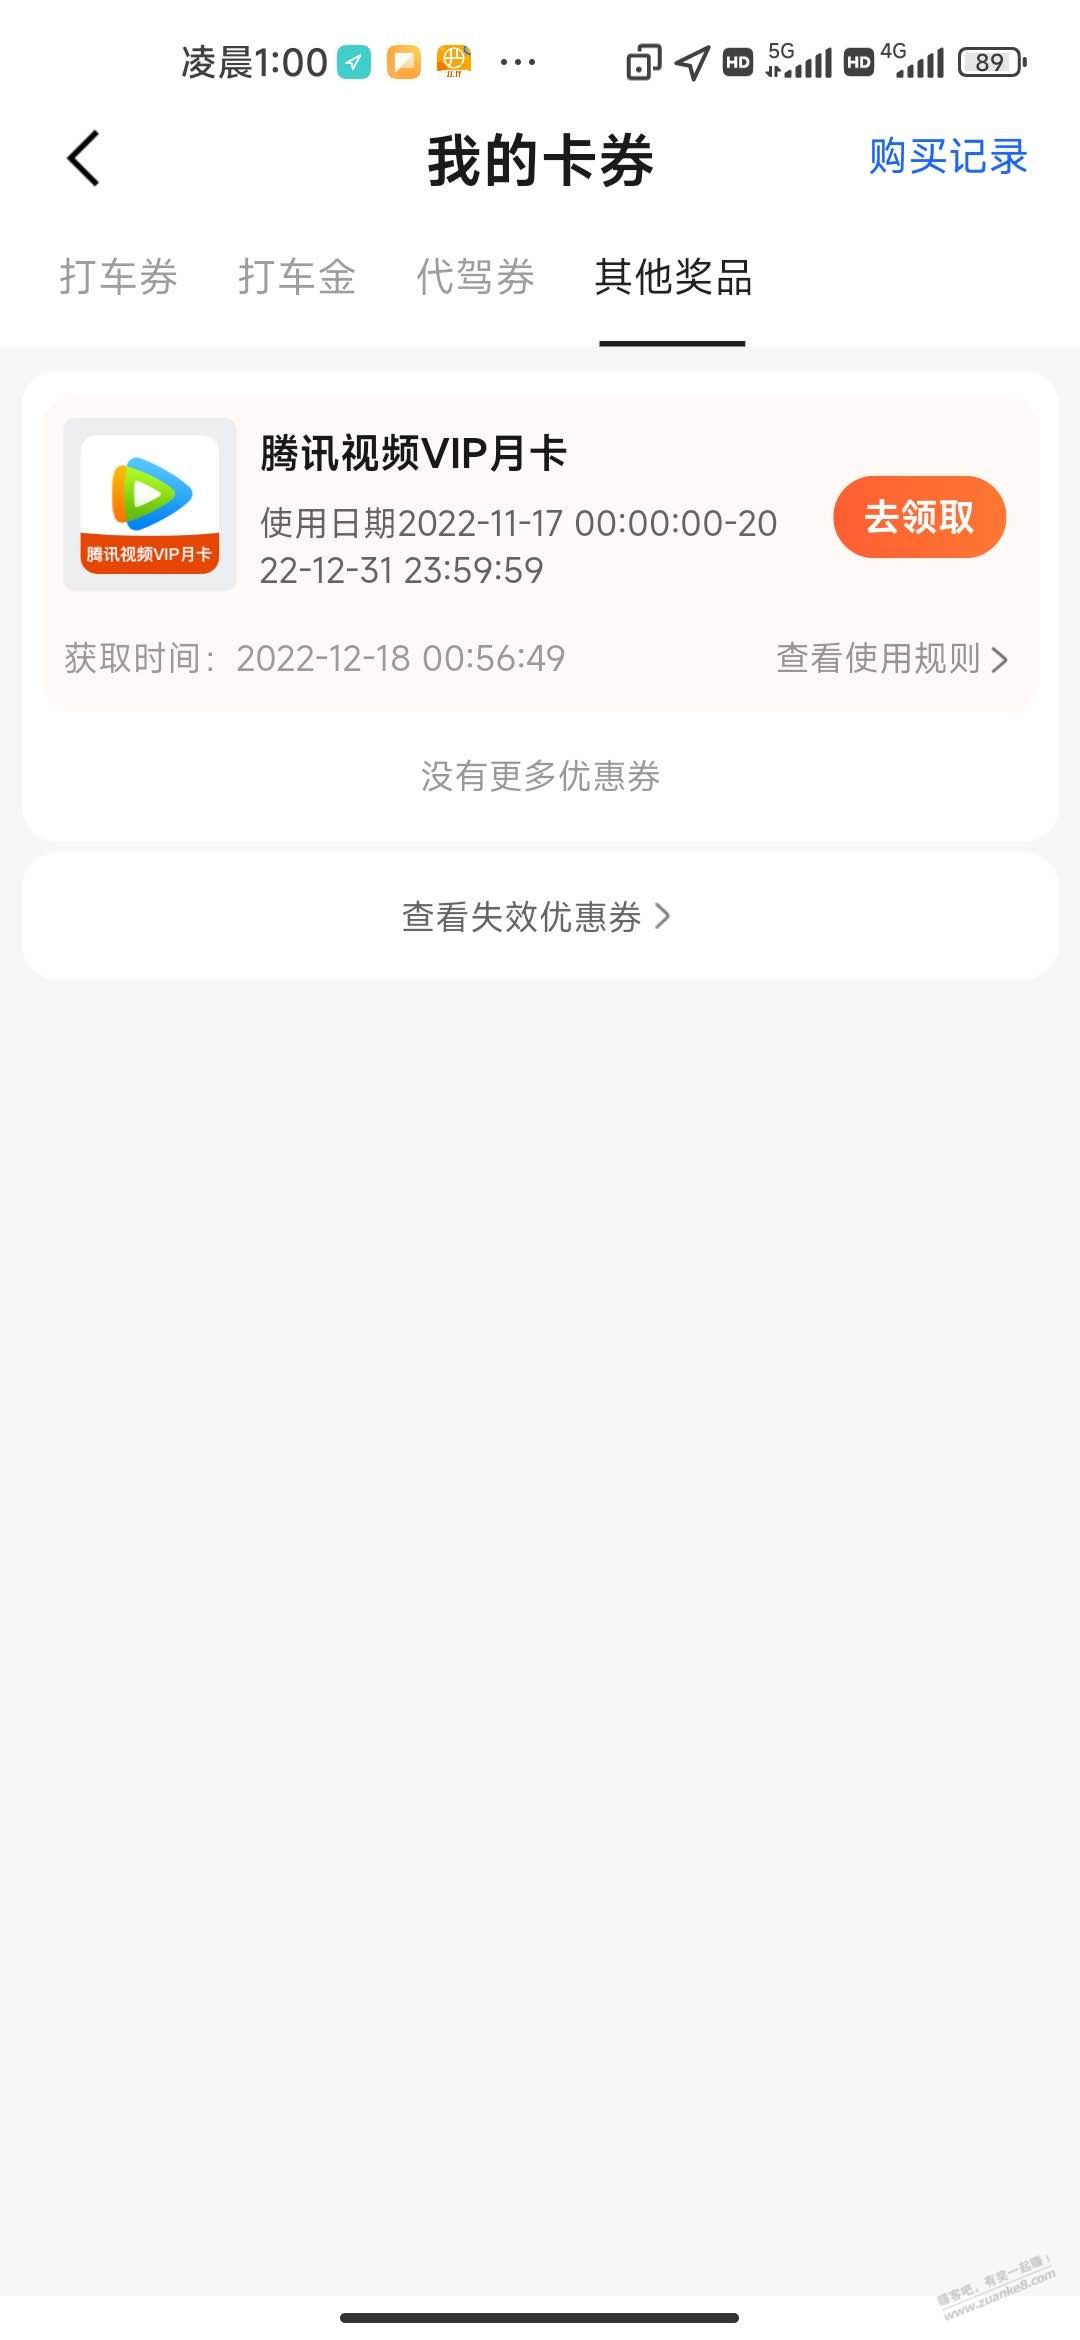 高德世界杯大水-惠小助(52huixz.com)